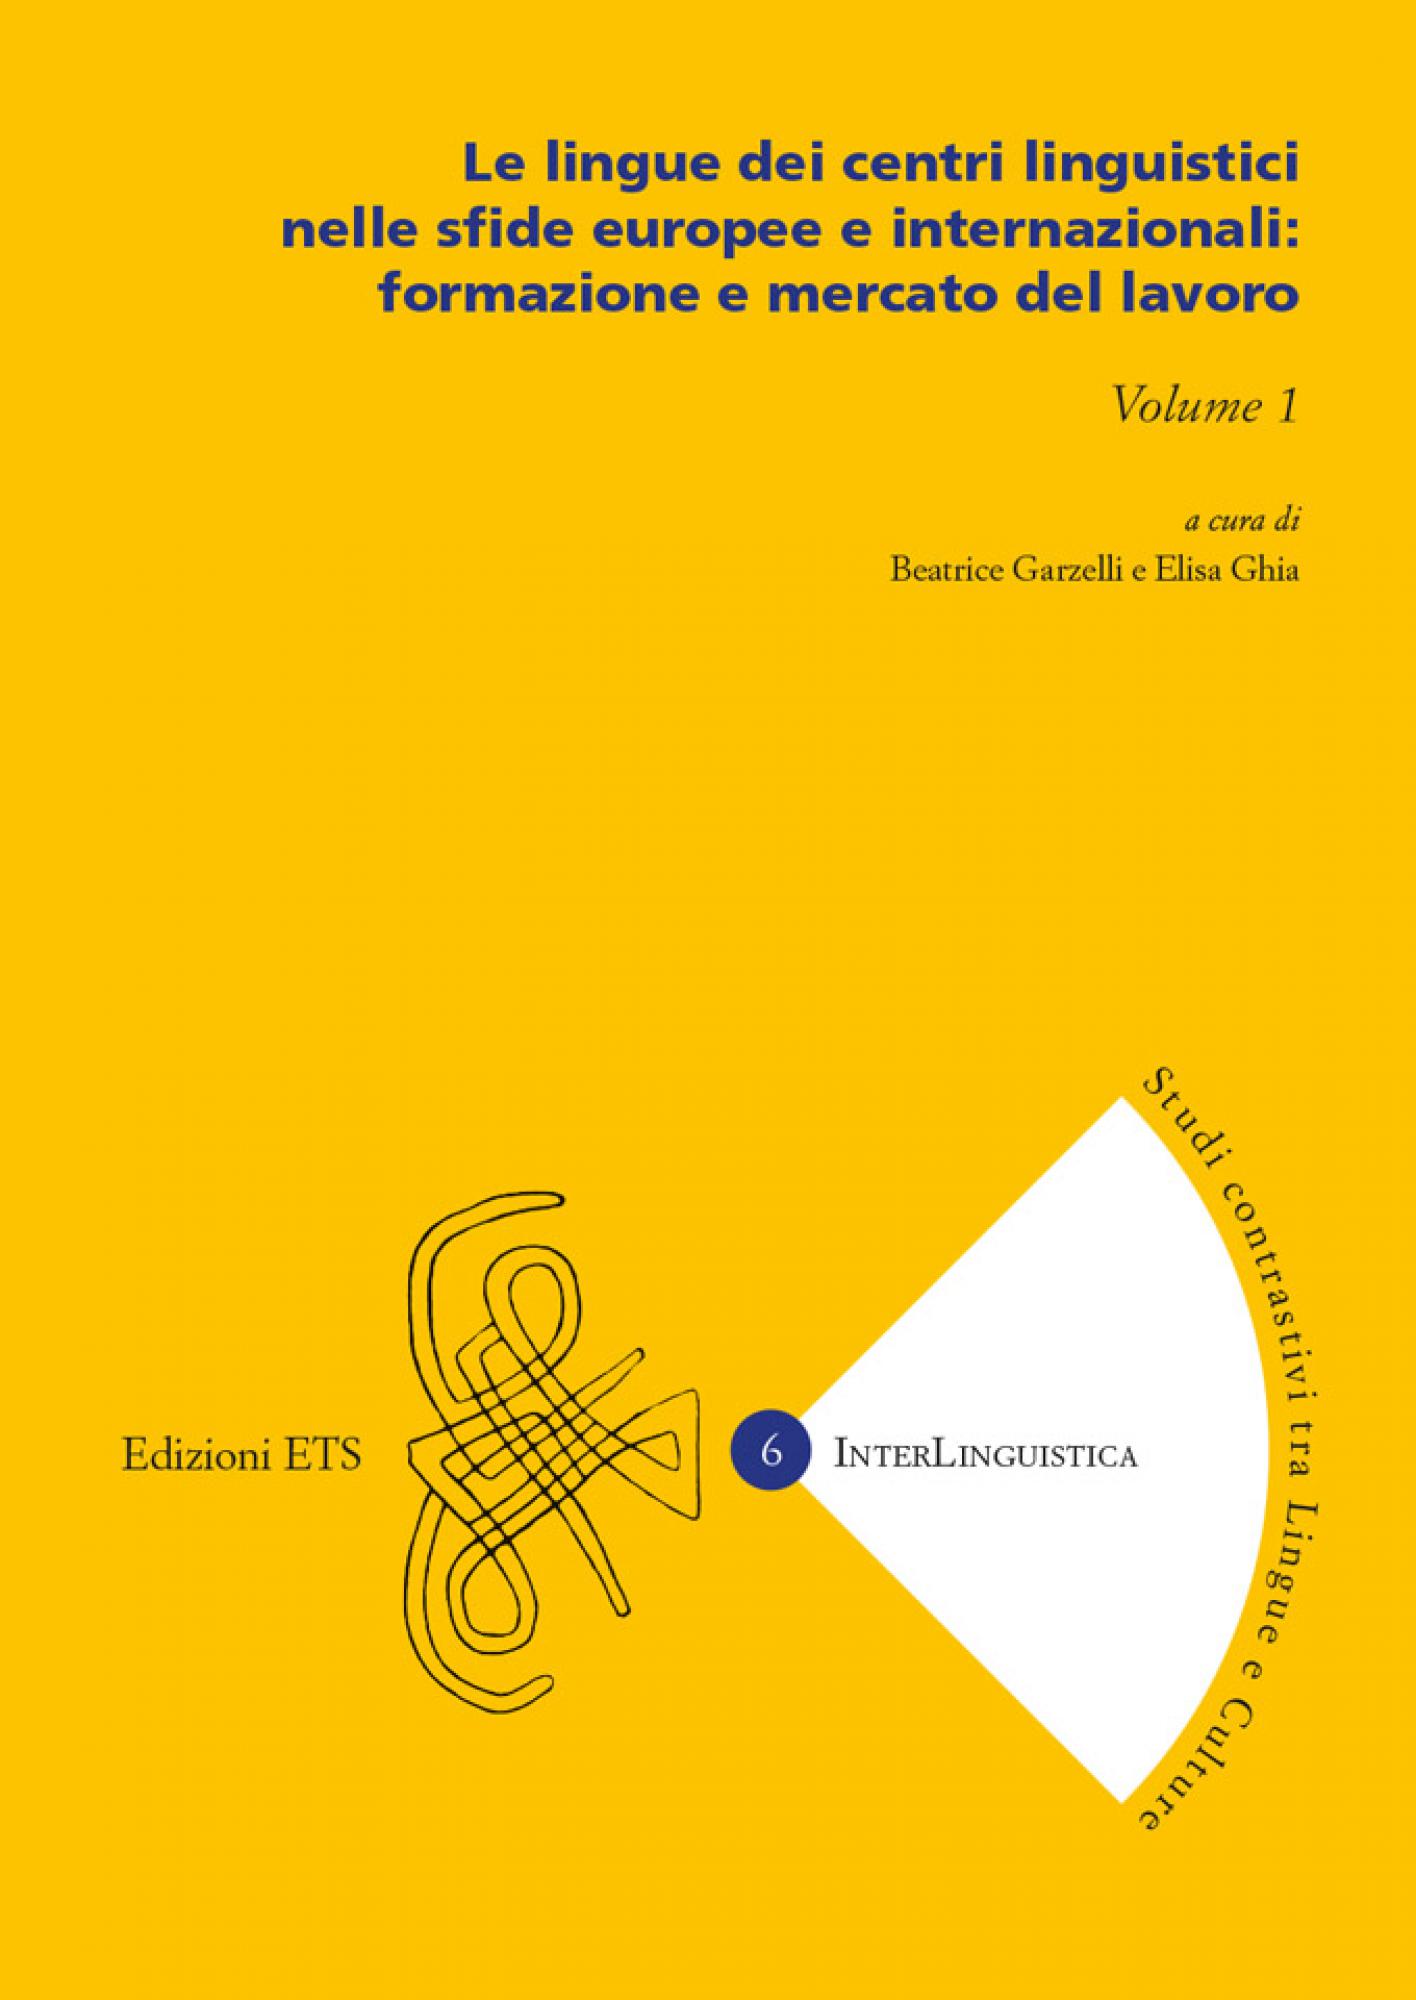 Le lingue dei centri linguistici nelle sfide europee e internazionali: formazione e mercato del lavoro.Volume 1